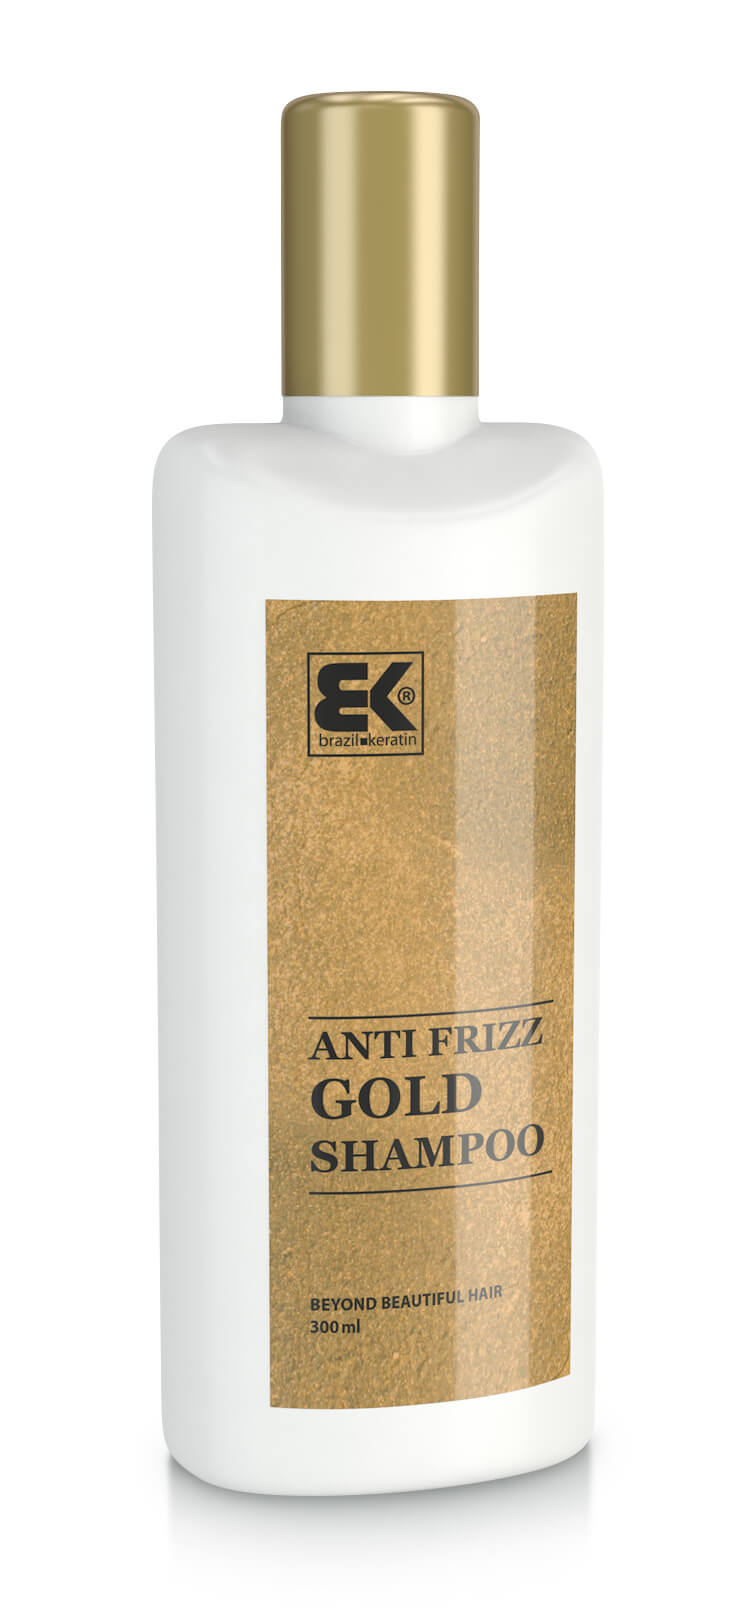 Brazil Keratin Zlatý šampón pre poškodené vlasy (Shampoo Anti-Frizz Gold) 300 ml + 2 mesiace na vrátenie tovaru